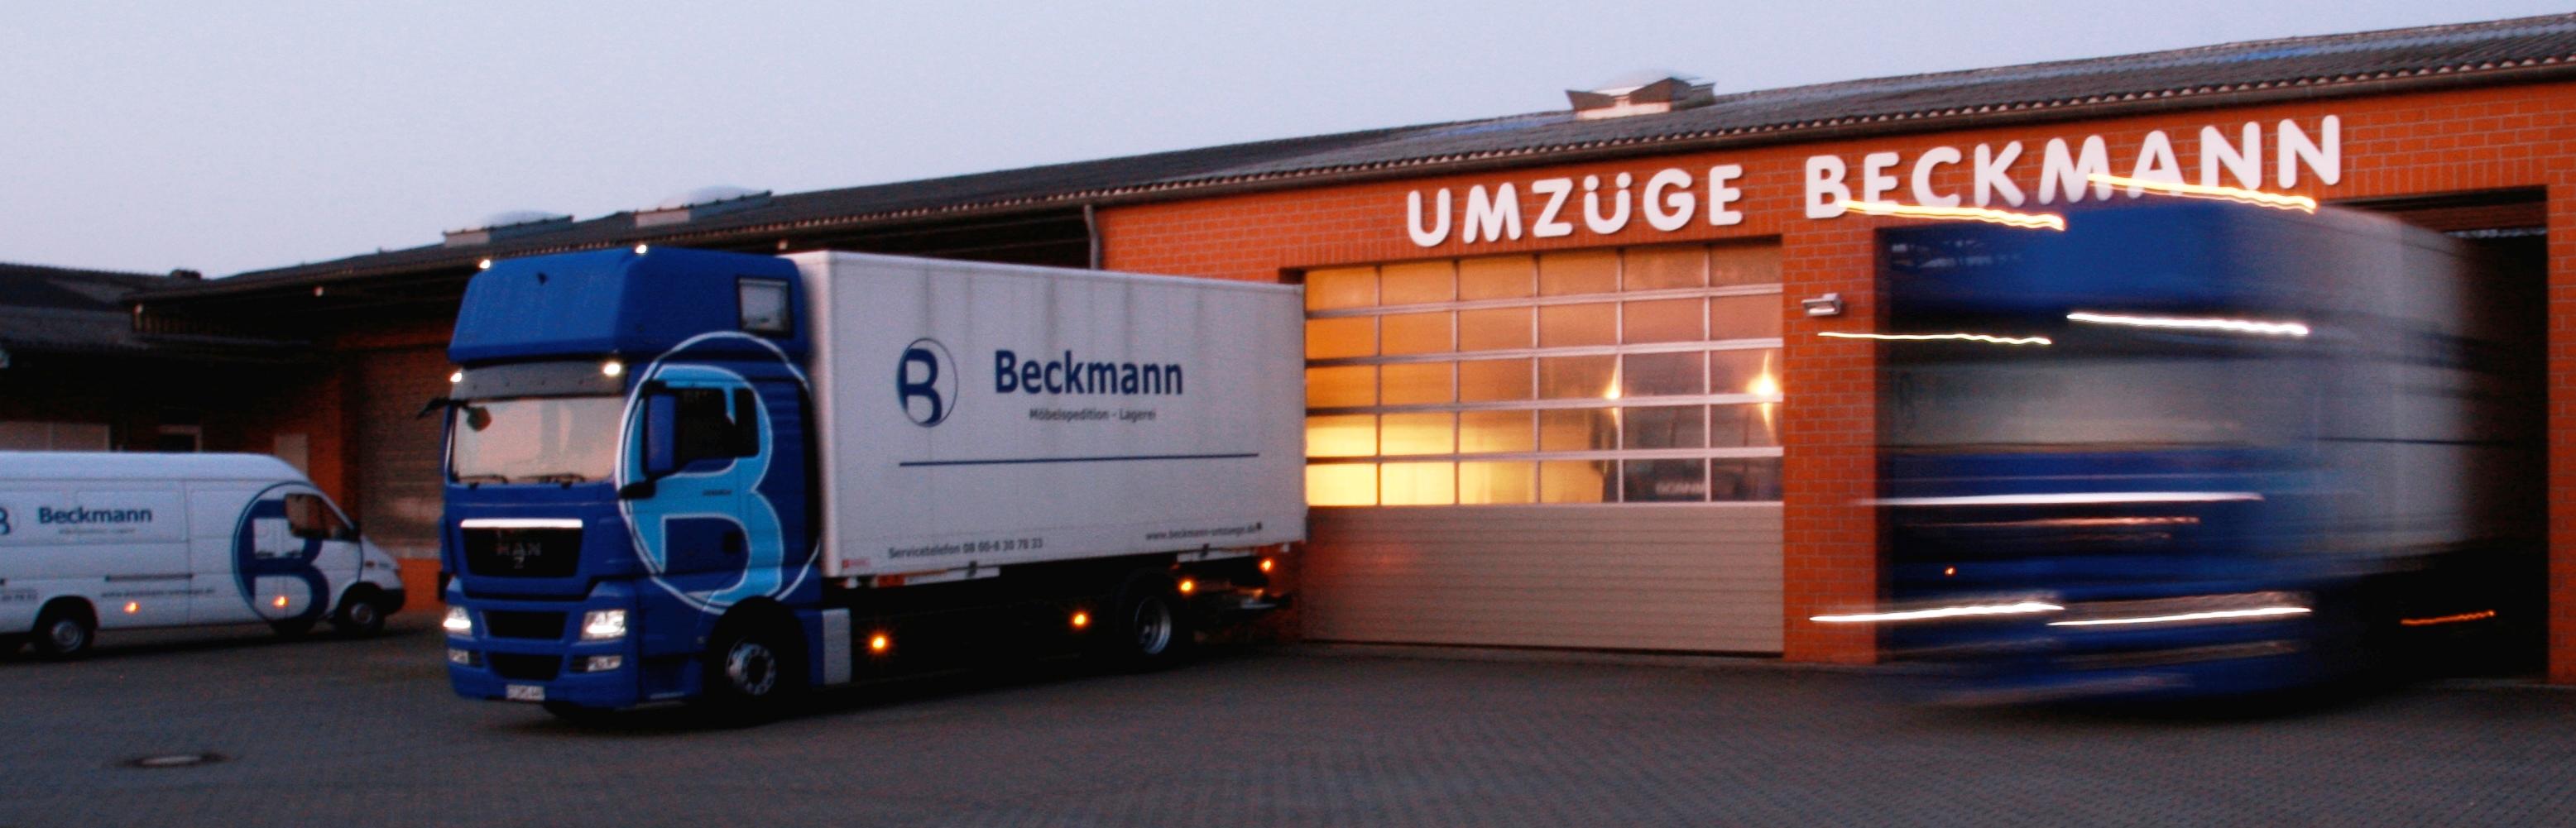 Beckmann GmbH Möbeltransport u. Lagerhaus, Grevener Str. 395 in Münster